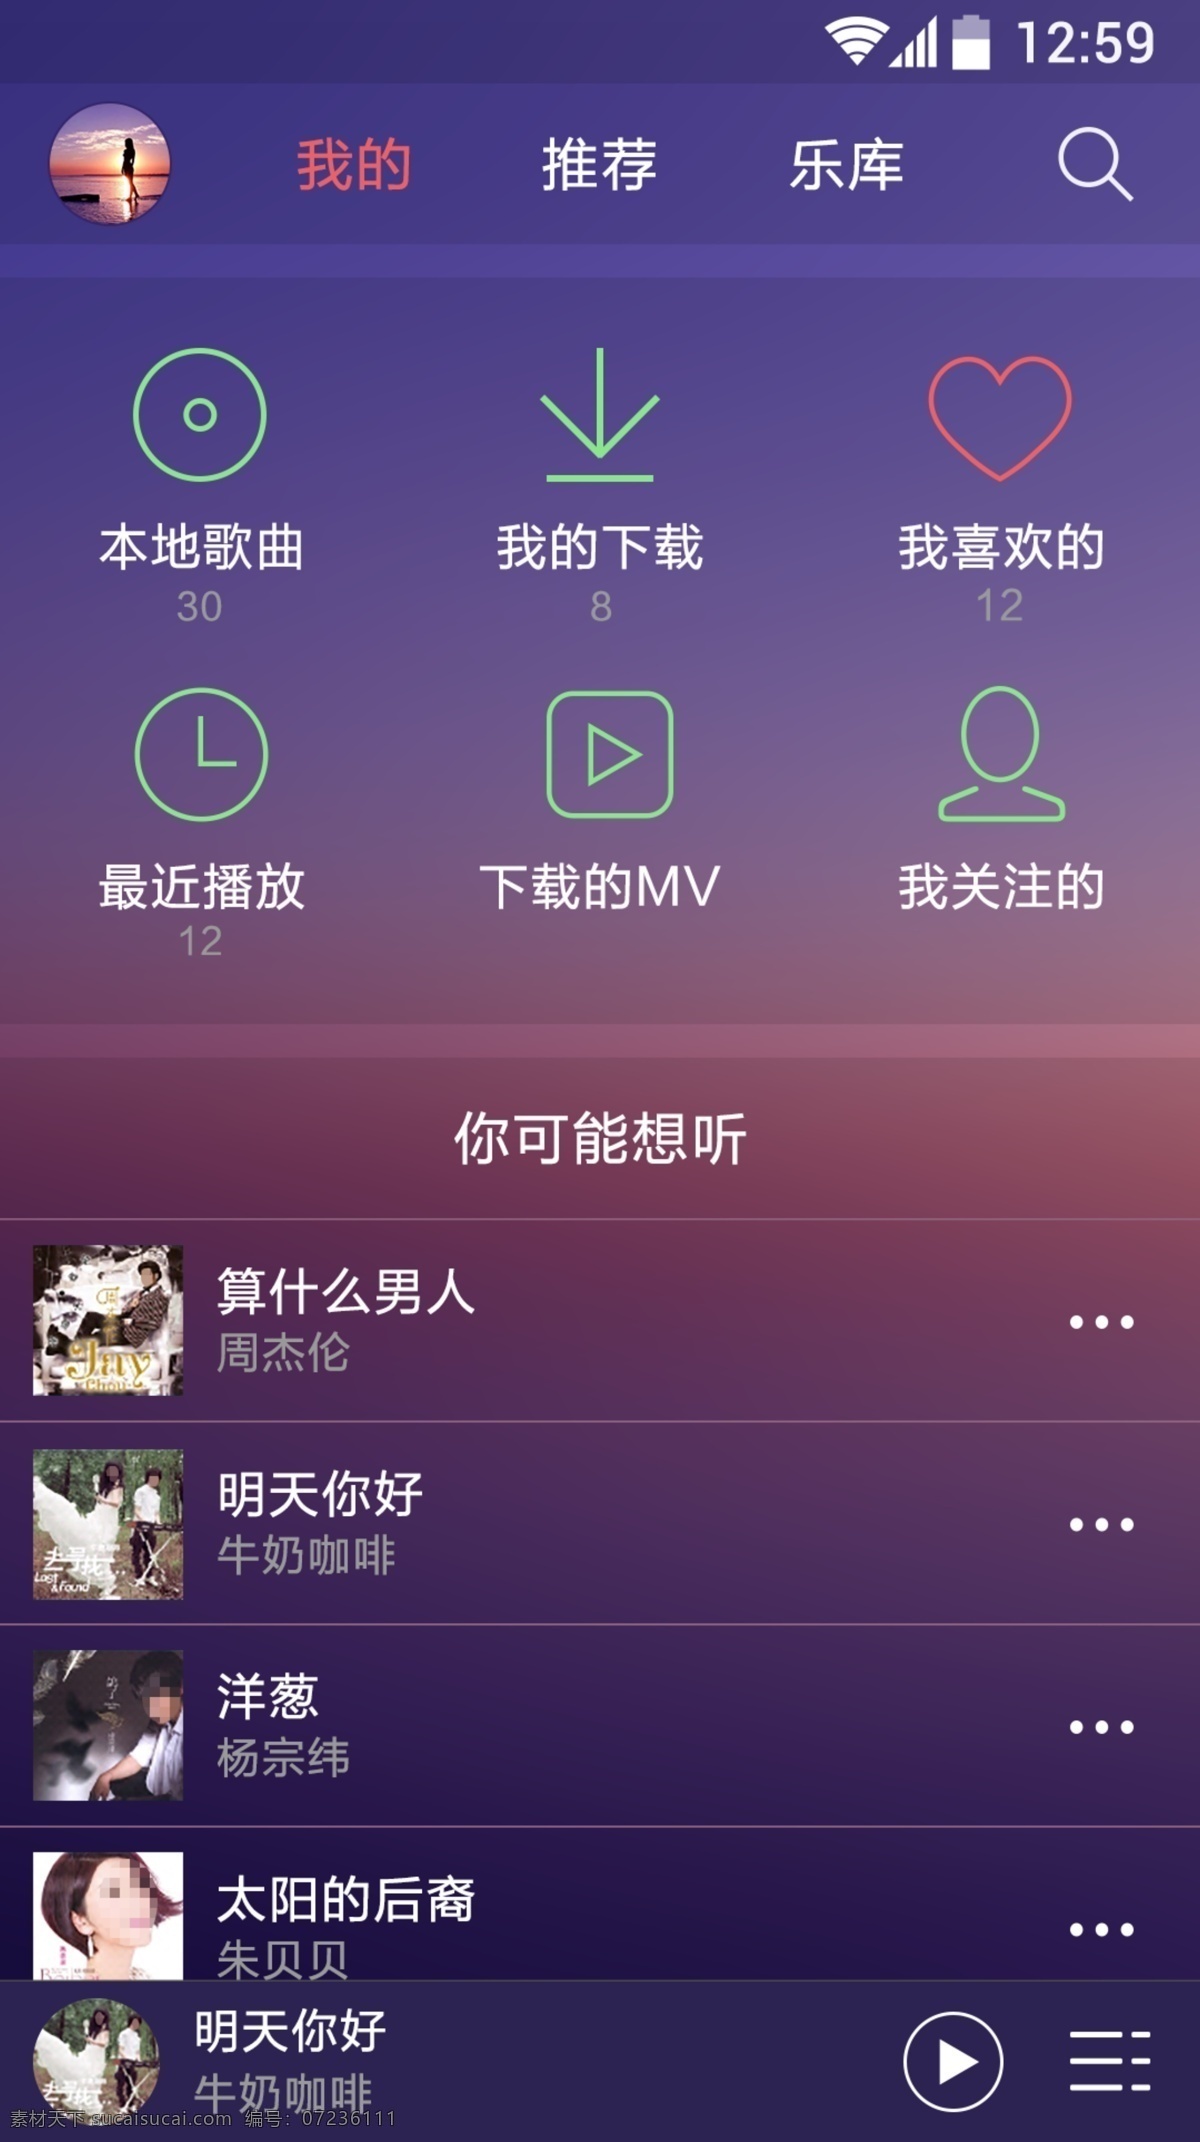 音乐 app 界面 app界面 主界面 安卓 移动 端 首页